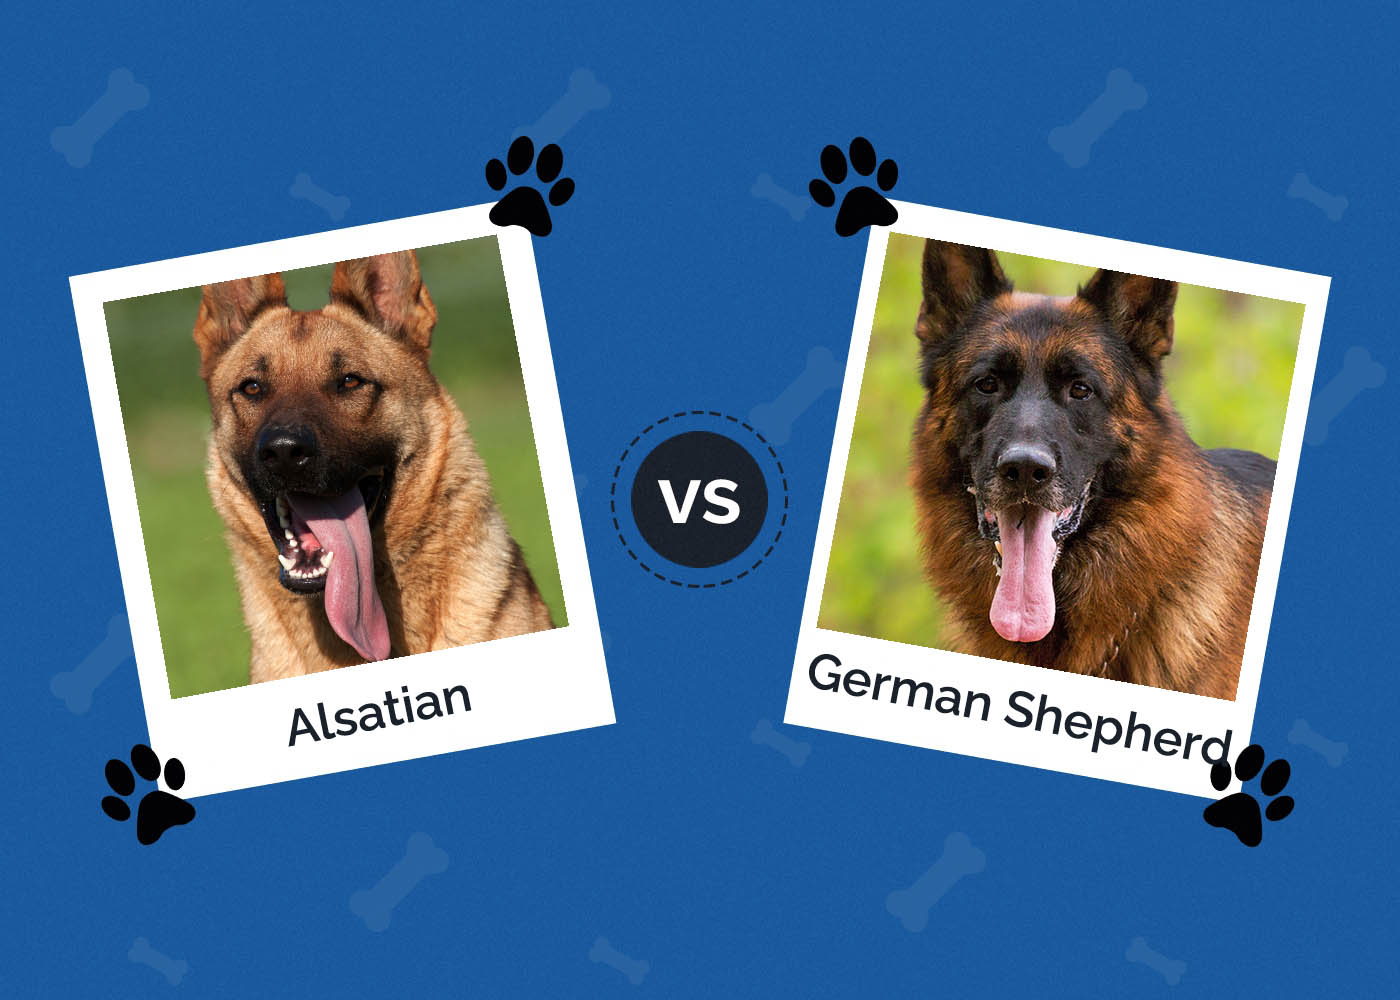 Alsatian vs German Shepherd